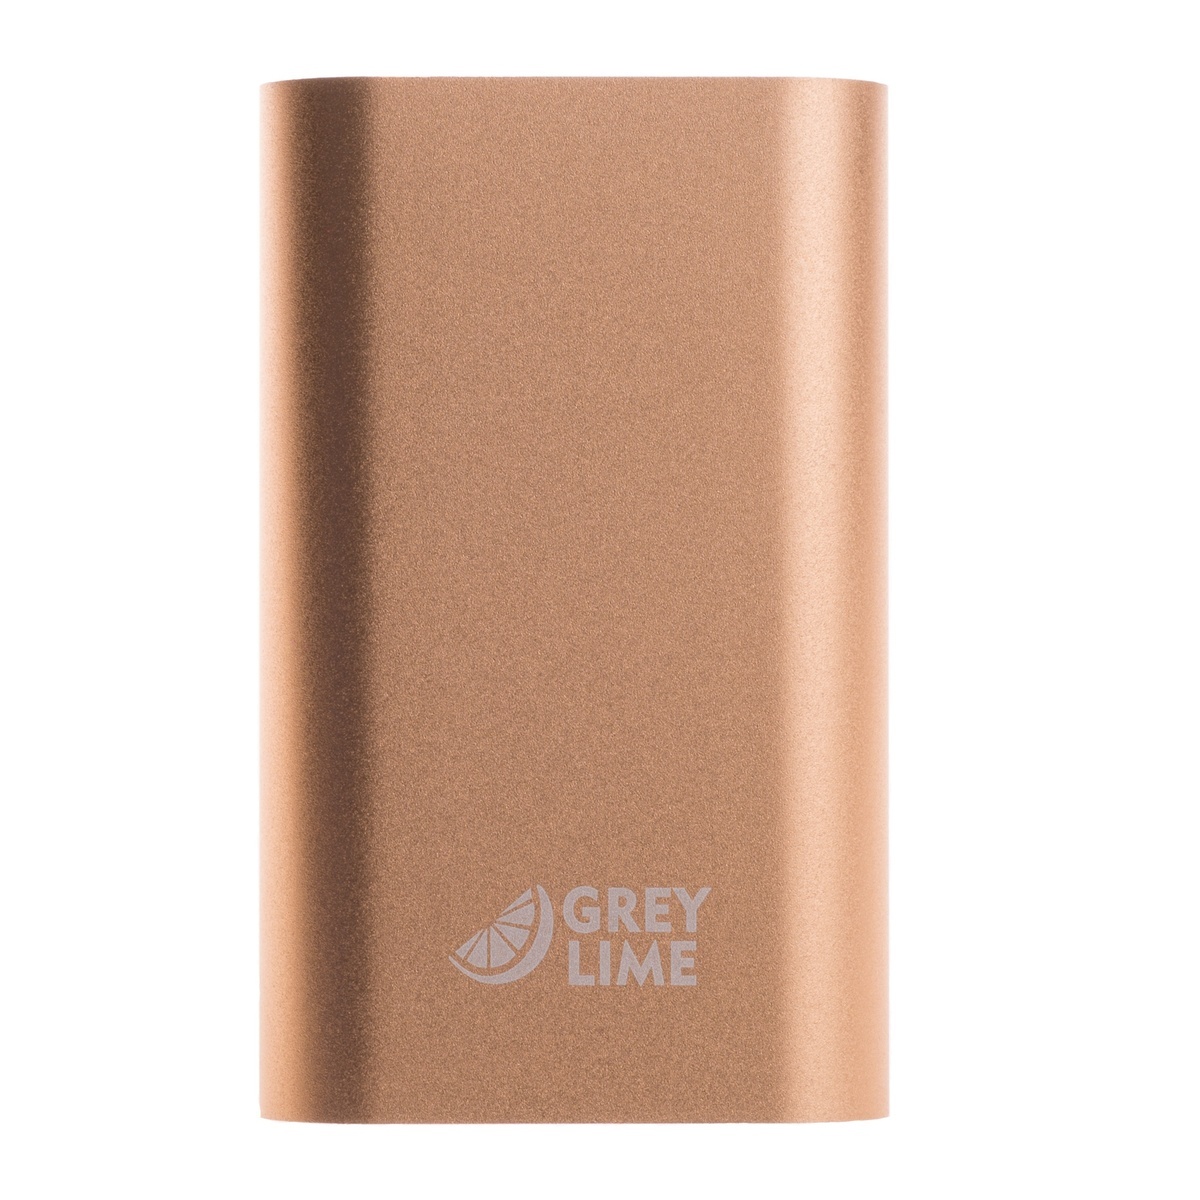 GreyLime Power Tough, 5200 mAh powerbank, Rose Gold 